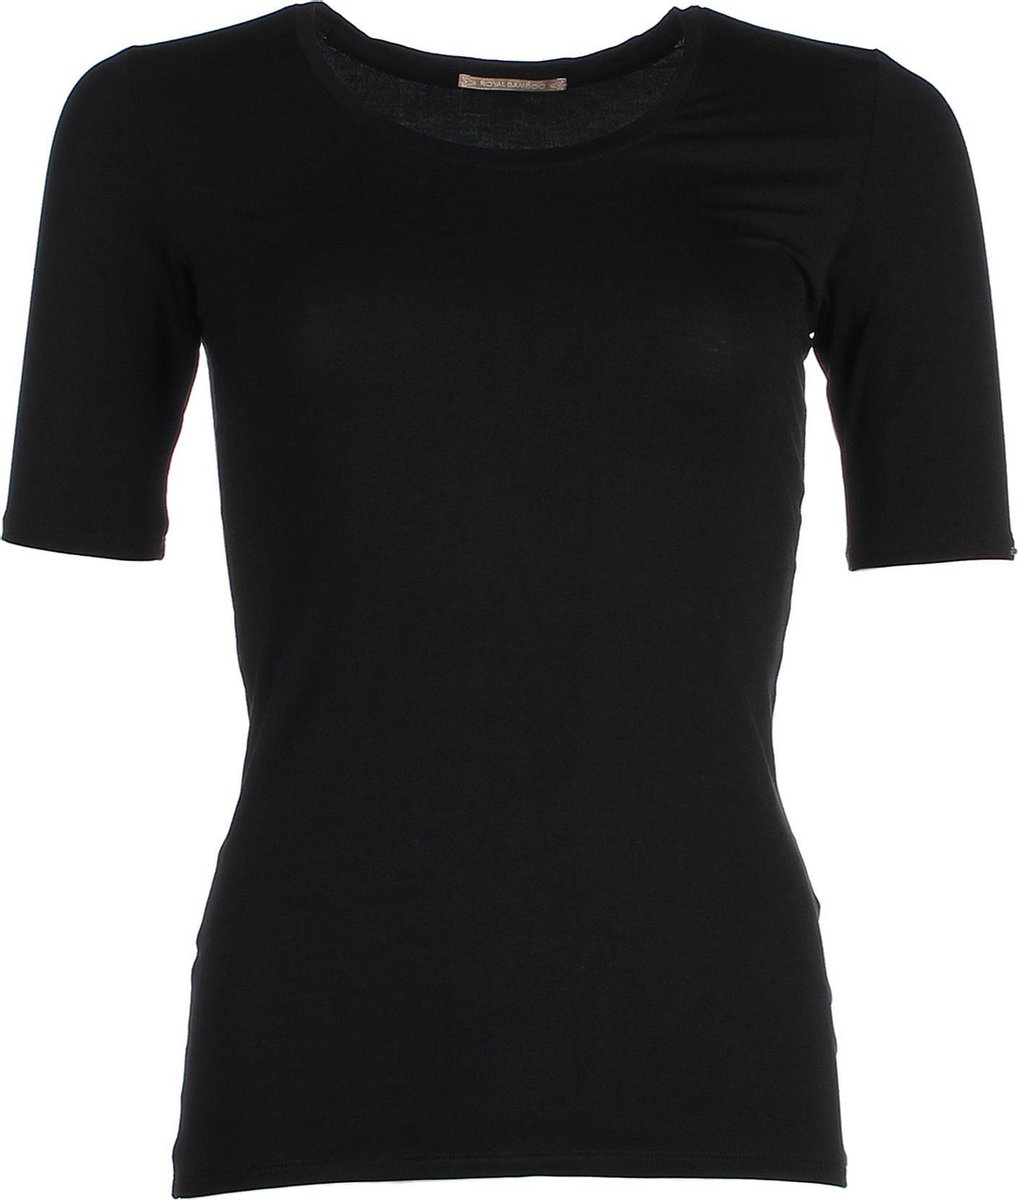 The Original Shortsleeve Shirt - Black - XLarge - bamboe kleding dames